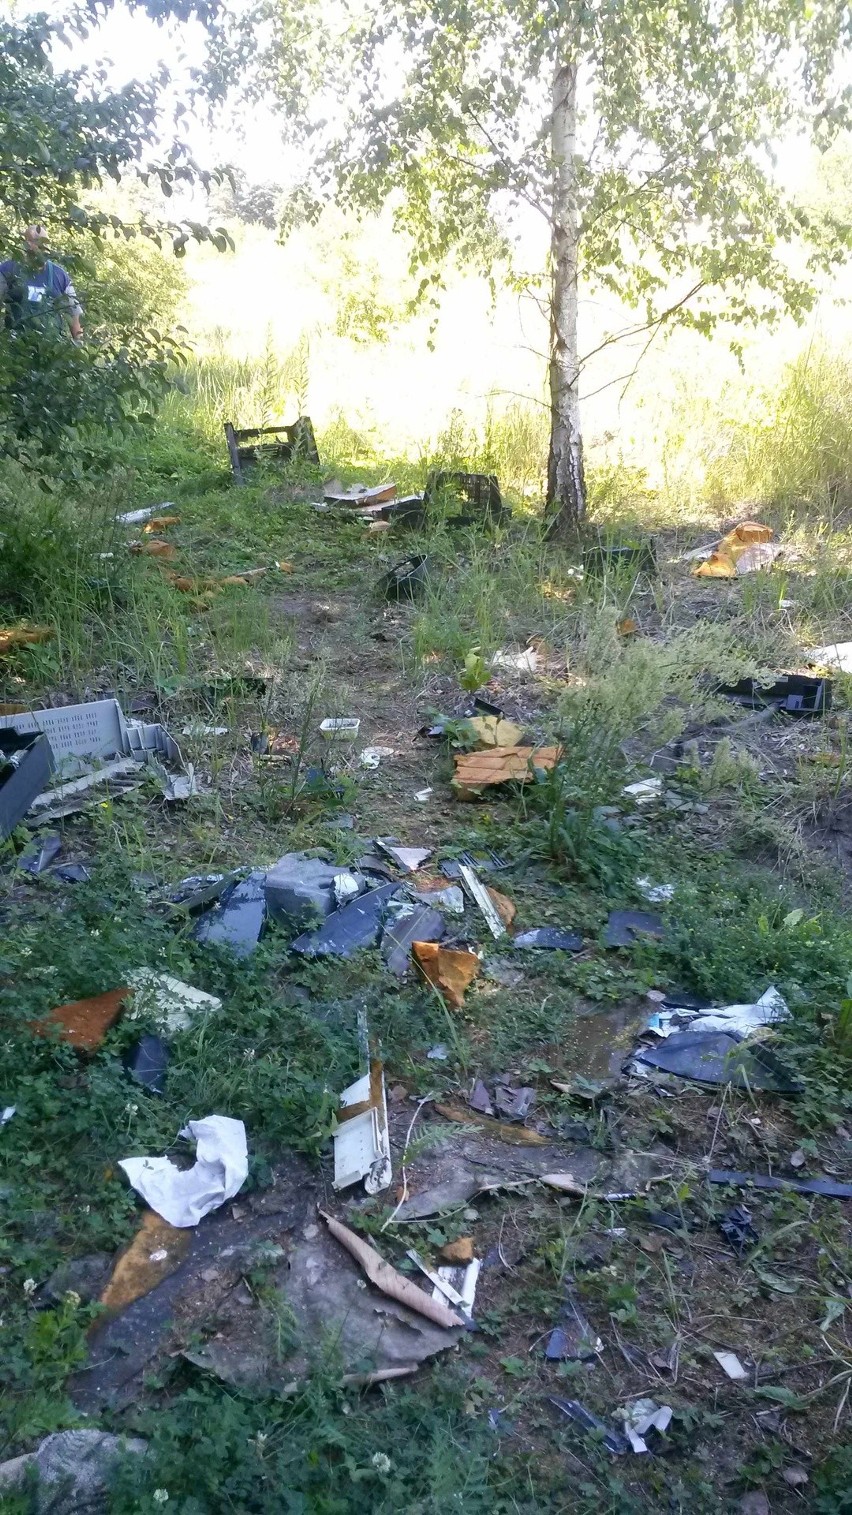 Wstyd! Plaga dzikich wysypisk w Szczecinie. Ponad 100 ton śmieci w lasach 